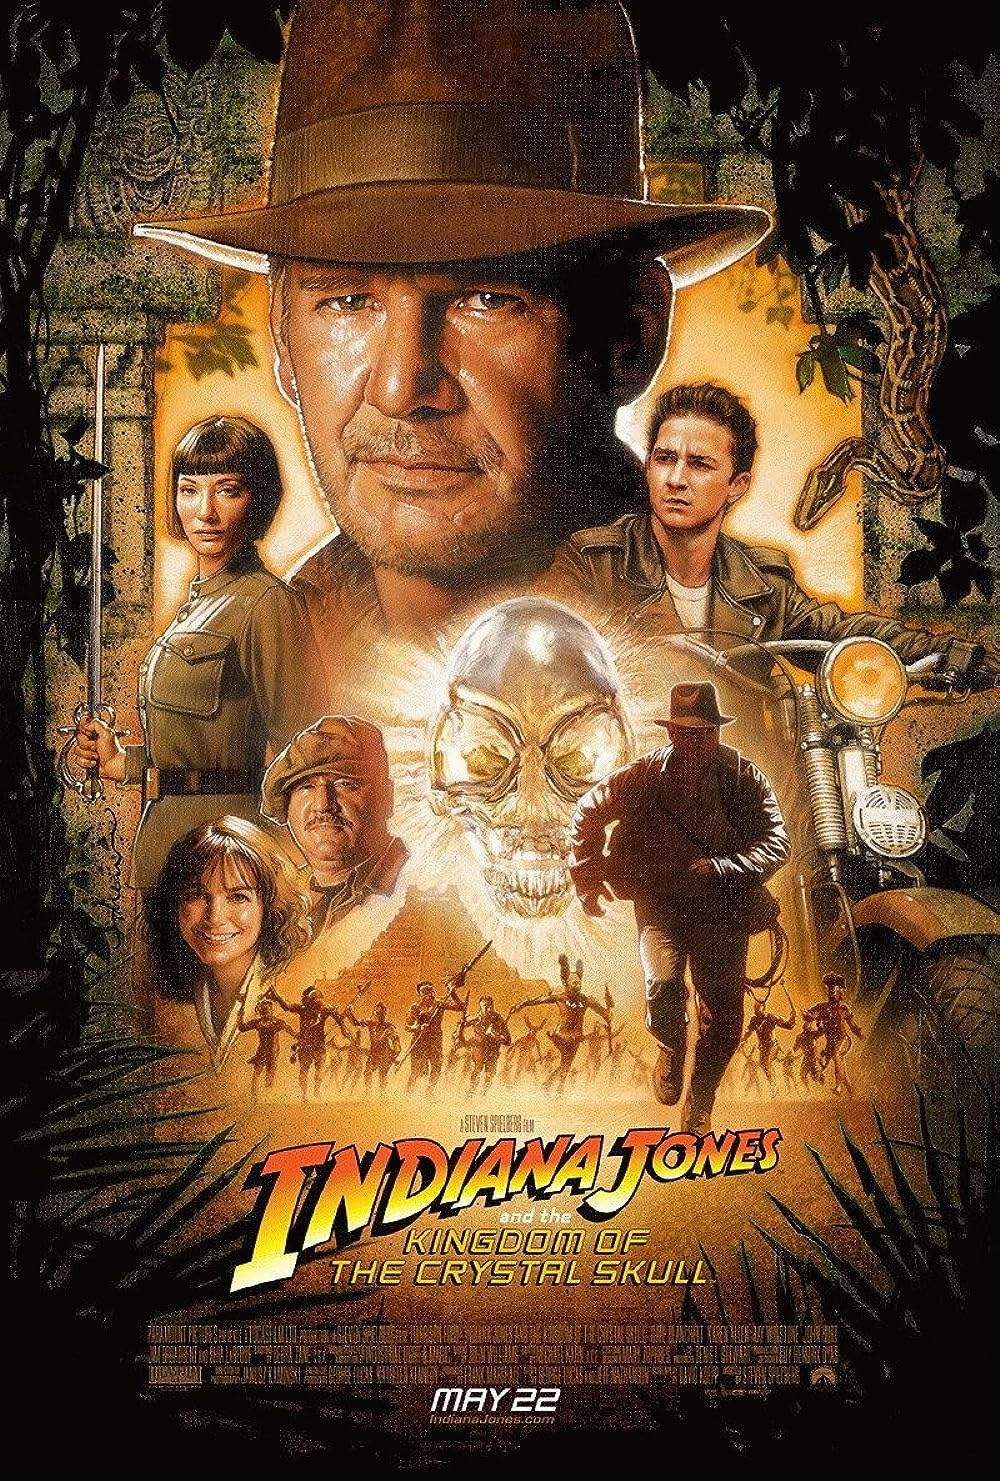 sürükleyici macera filmi Indiana Jones